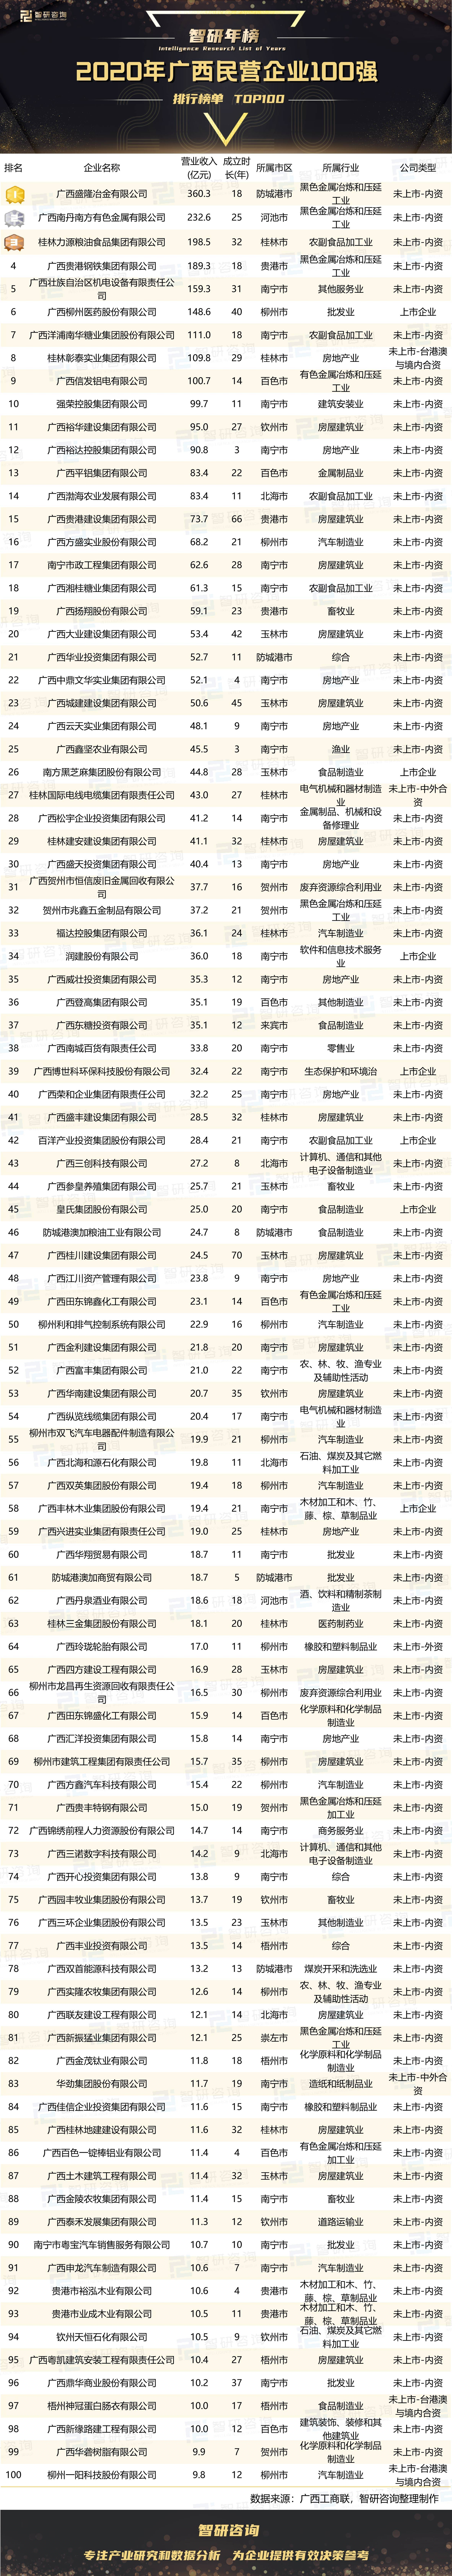 广西建筑排行_关注2020年广西装配式建筑示范基地名单公布,柳州2家上榜!(2)